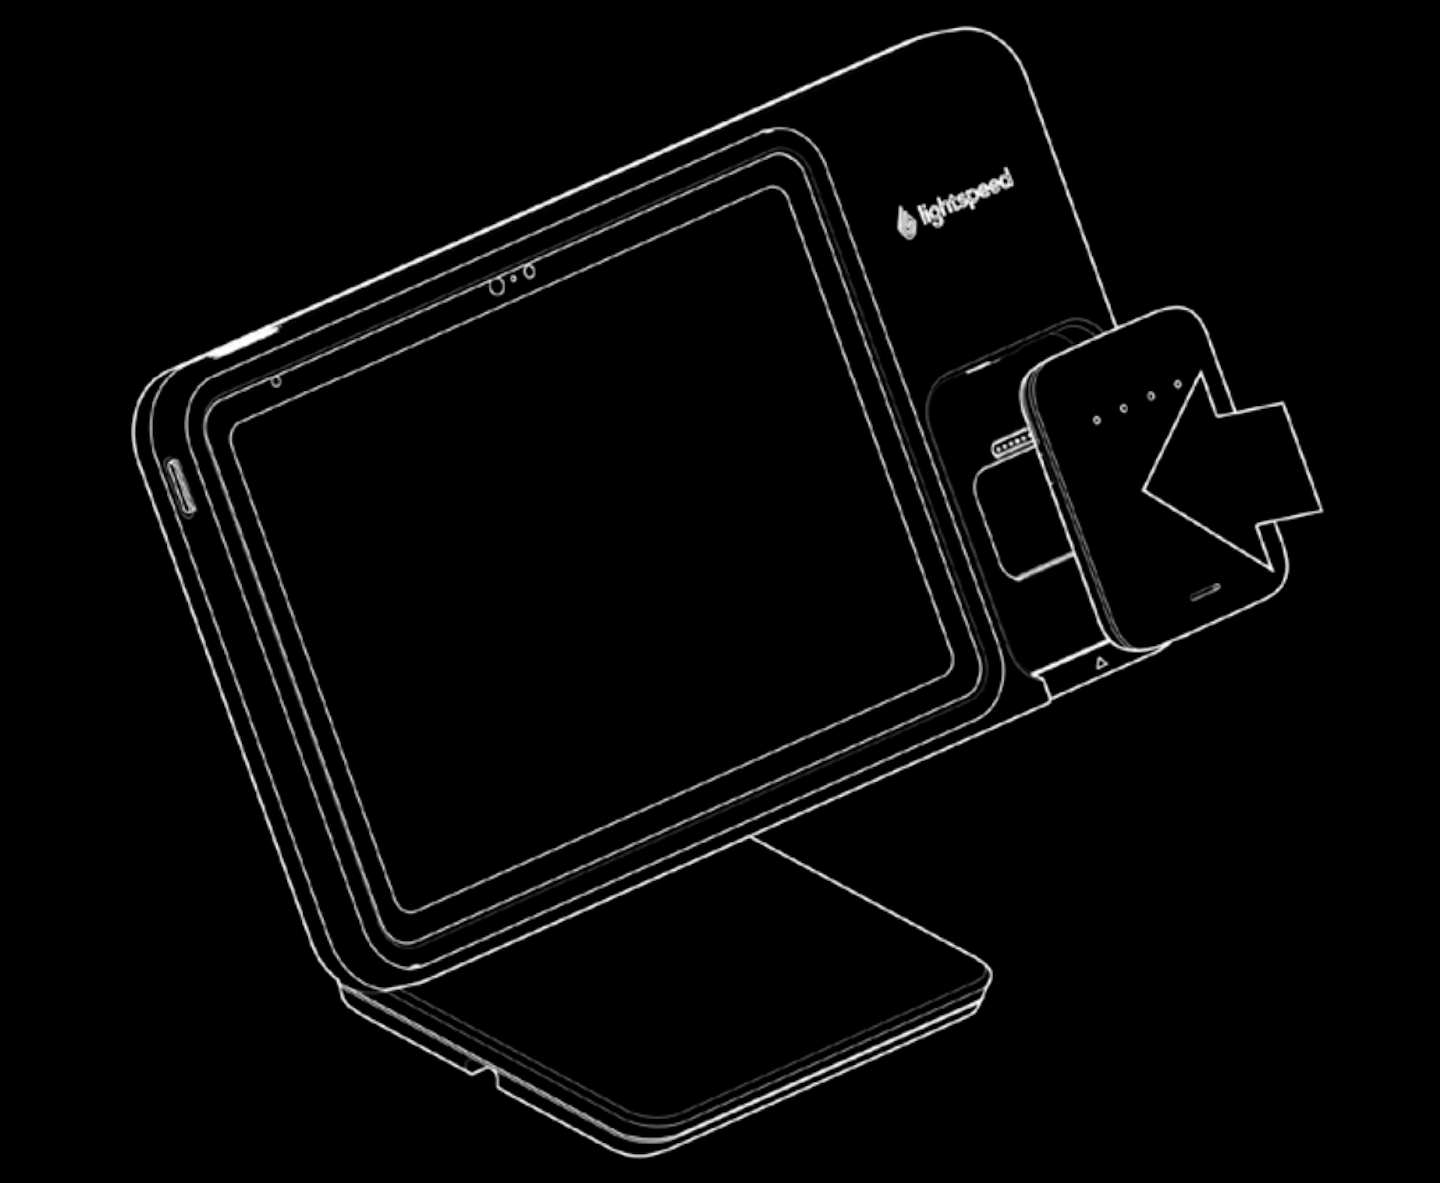 Afbeelding van een Lightspeed-standaard met betaaloptie met een mobiele tap-lezer die in de uitsparing is geplaatst.